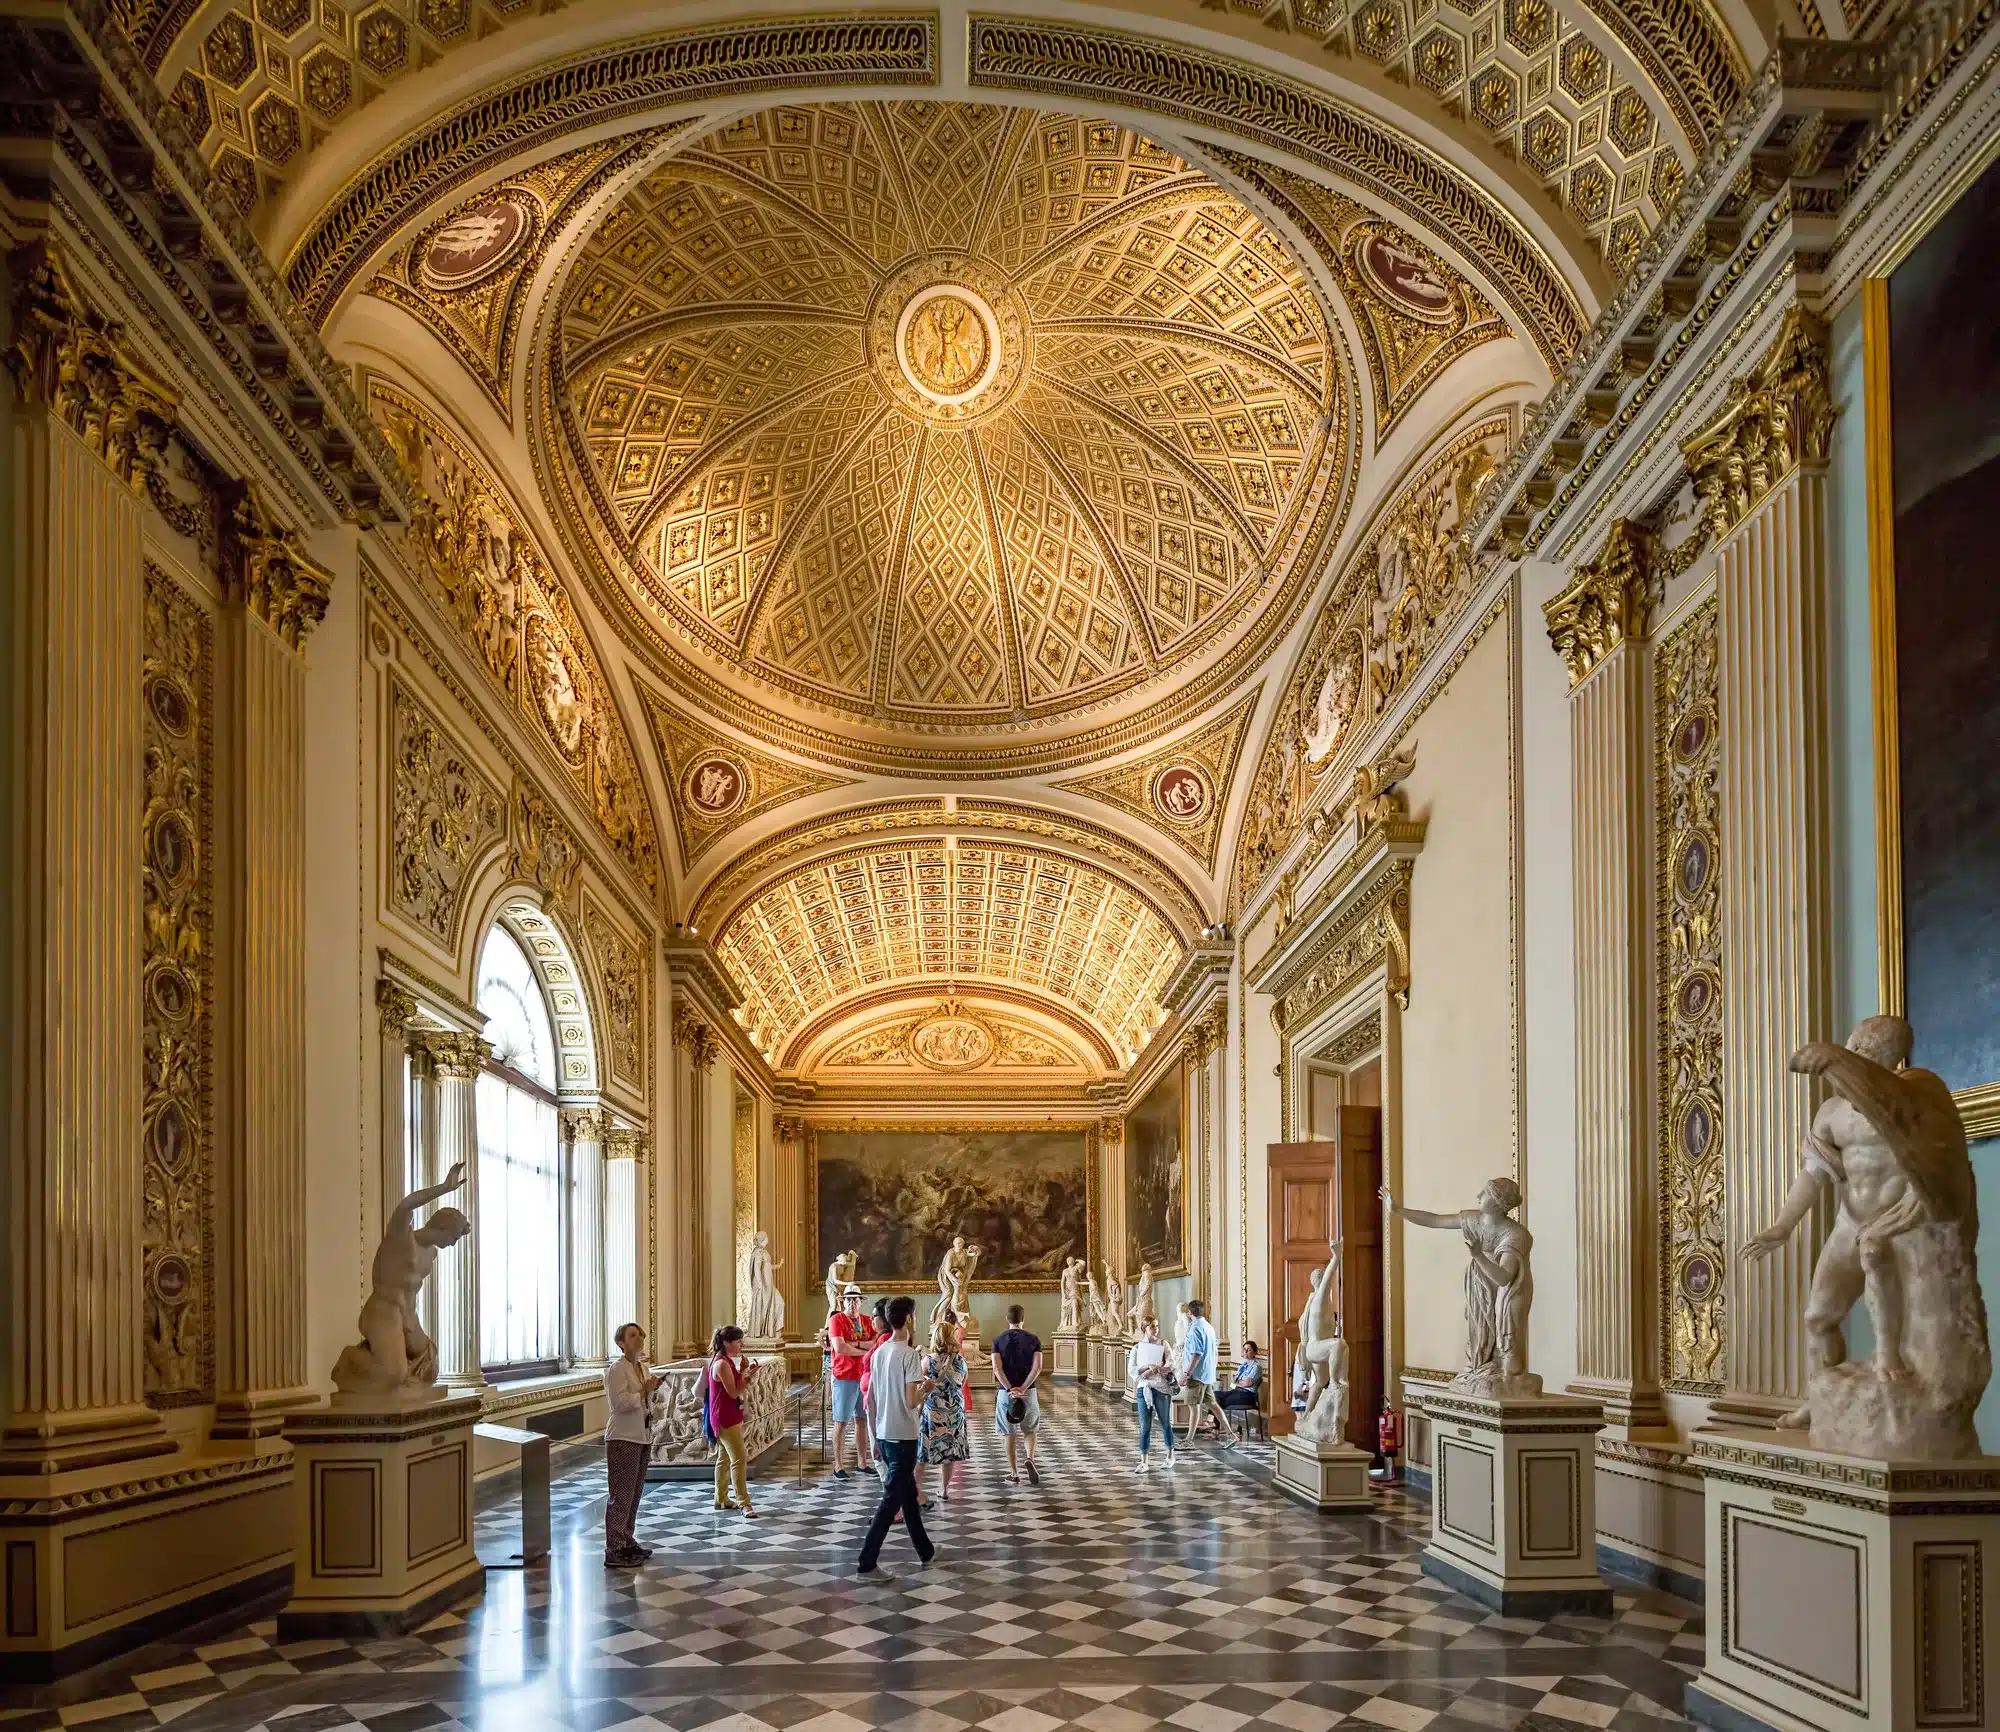 Firenze, Italien, Uffizi Gallery. Uffizi er et af de ældste museer i Europa, beliggende i Firenze, Toscana